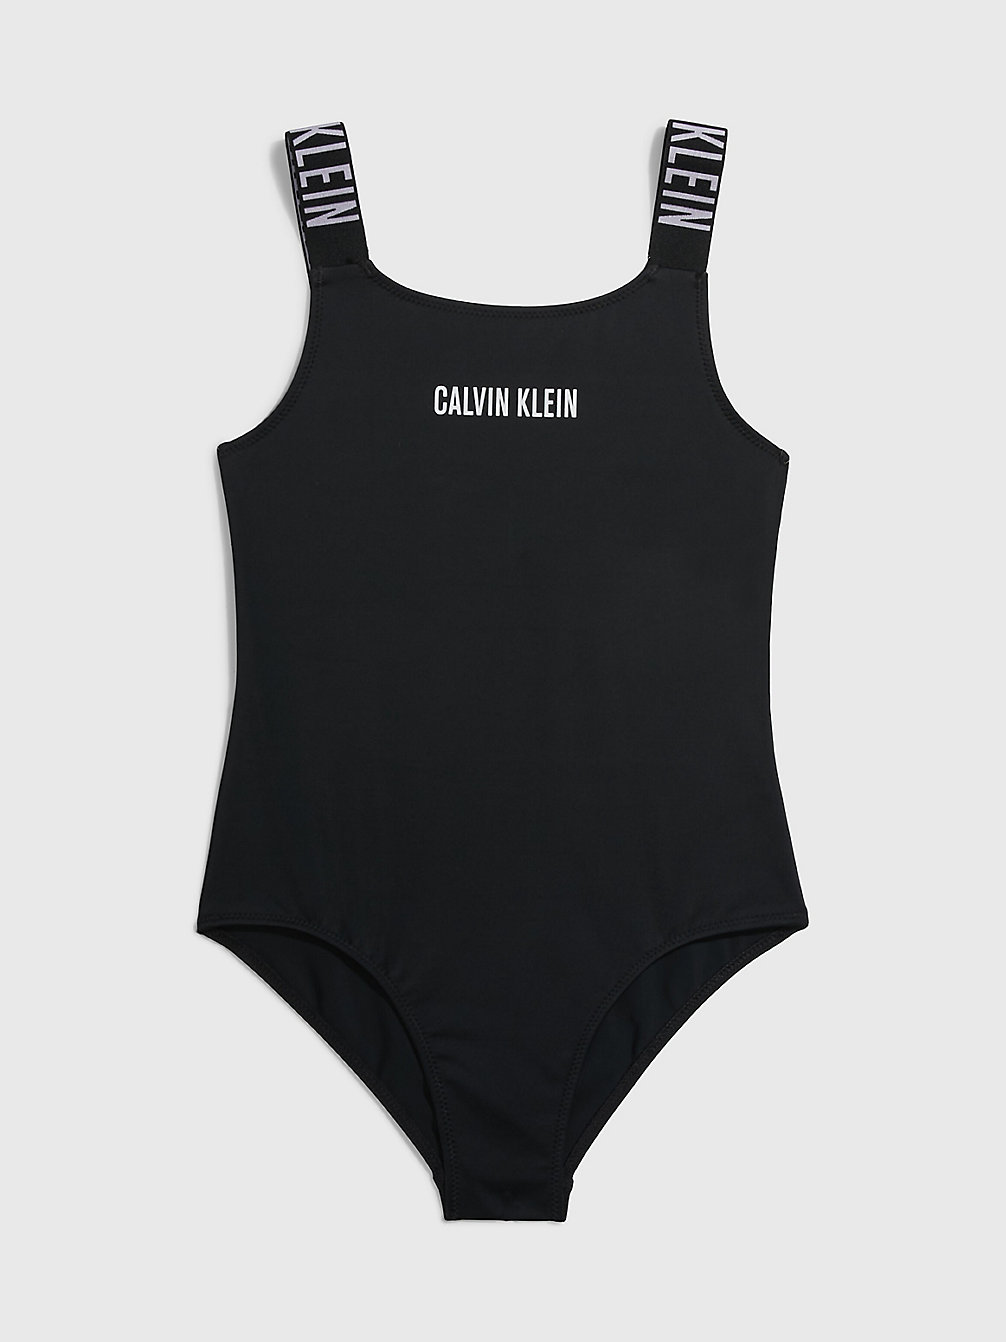 PVH BLACK Badeanzug Für Mädchen - Intense Power undefined girls Calvin Klein